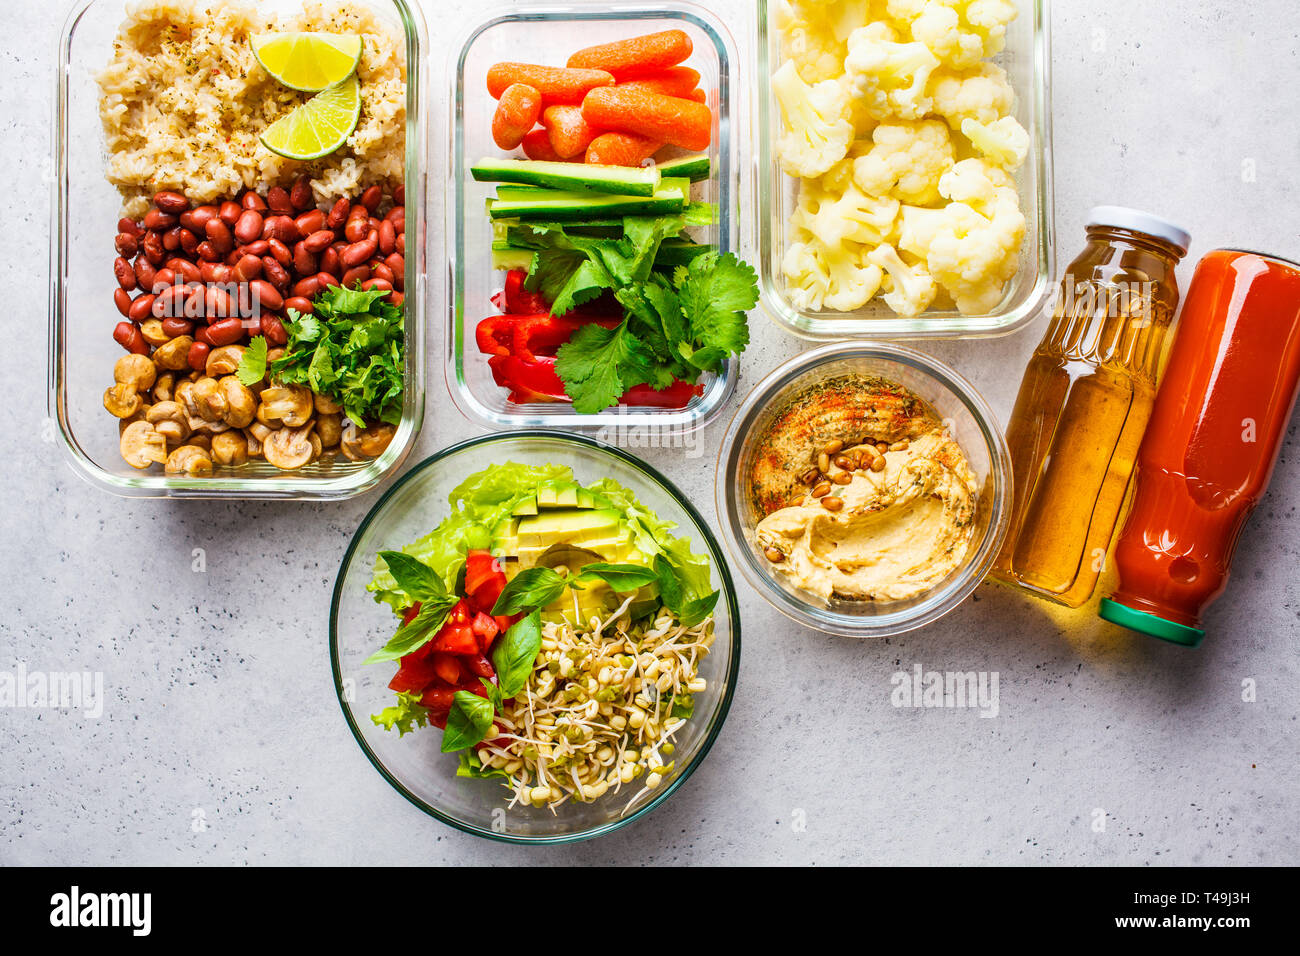 La nourriture végétalienne saine dans des récipients en verre, vue d'en haut. Riz, haricots, légumes, hoummos et jus pour le déjeuner à emporter Banque D'Images